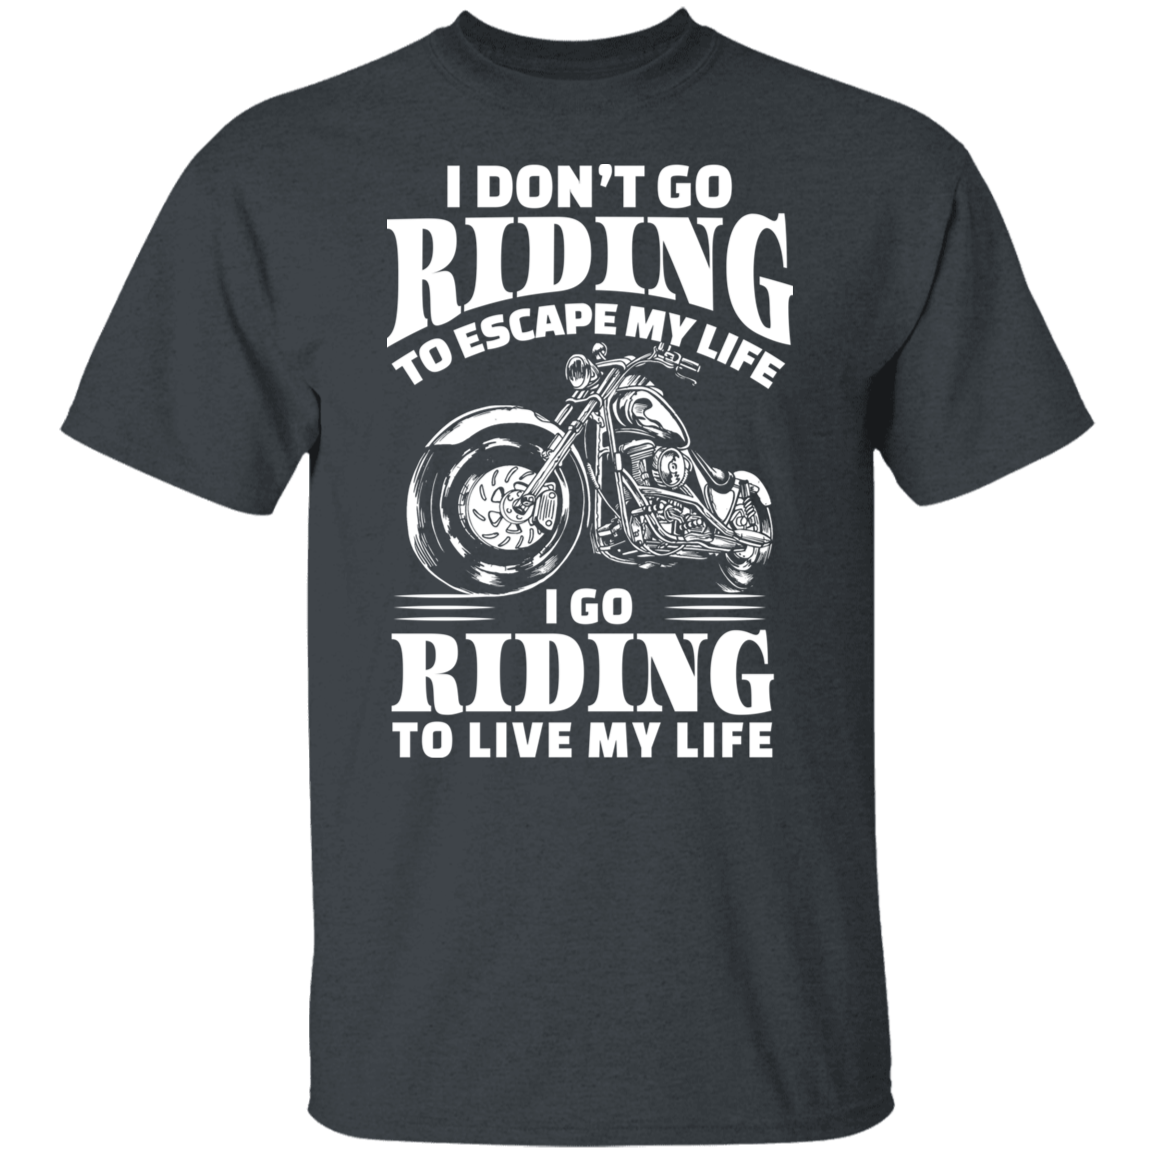 I Go Riding To Live My Life Shirt